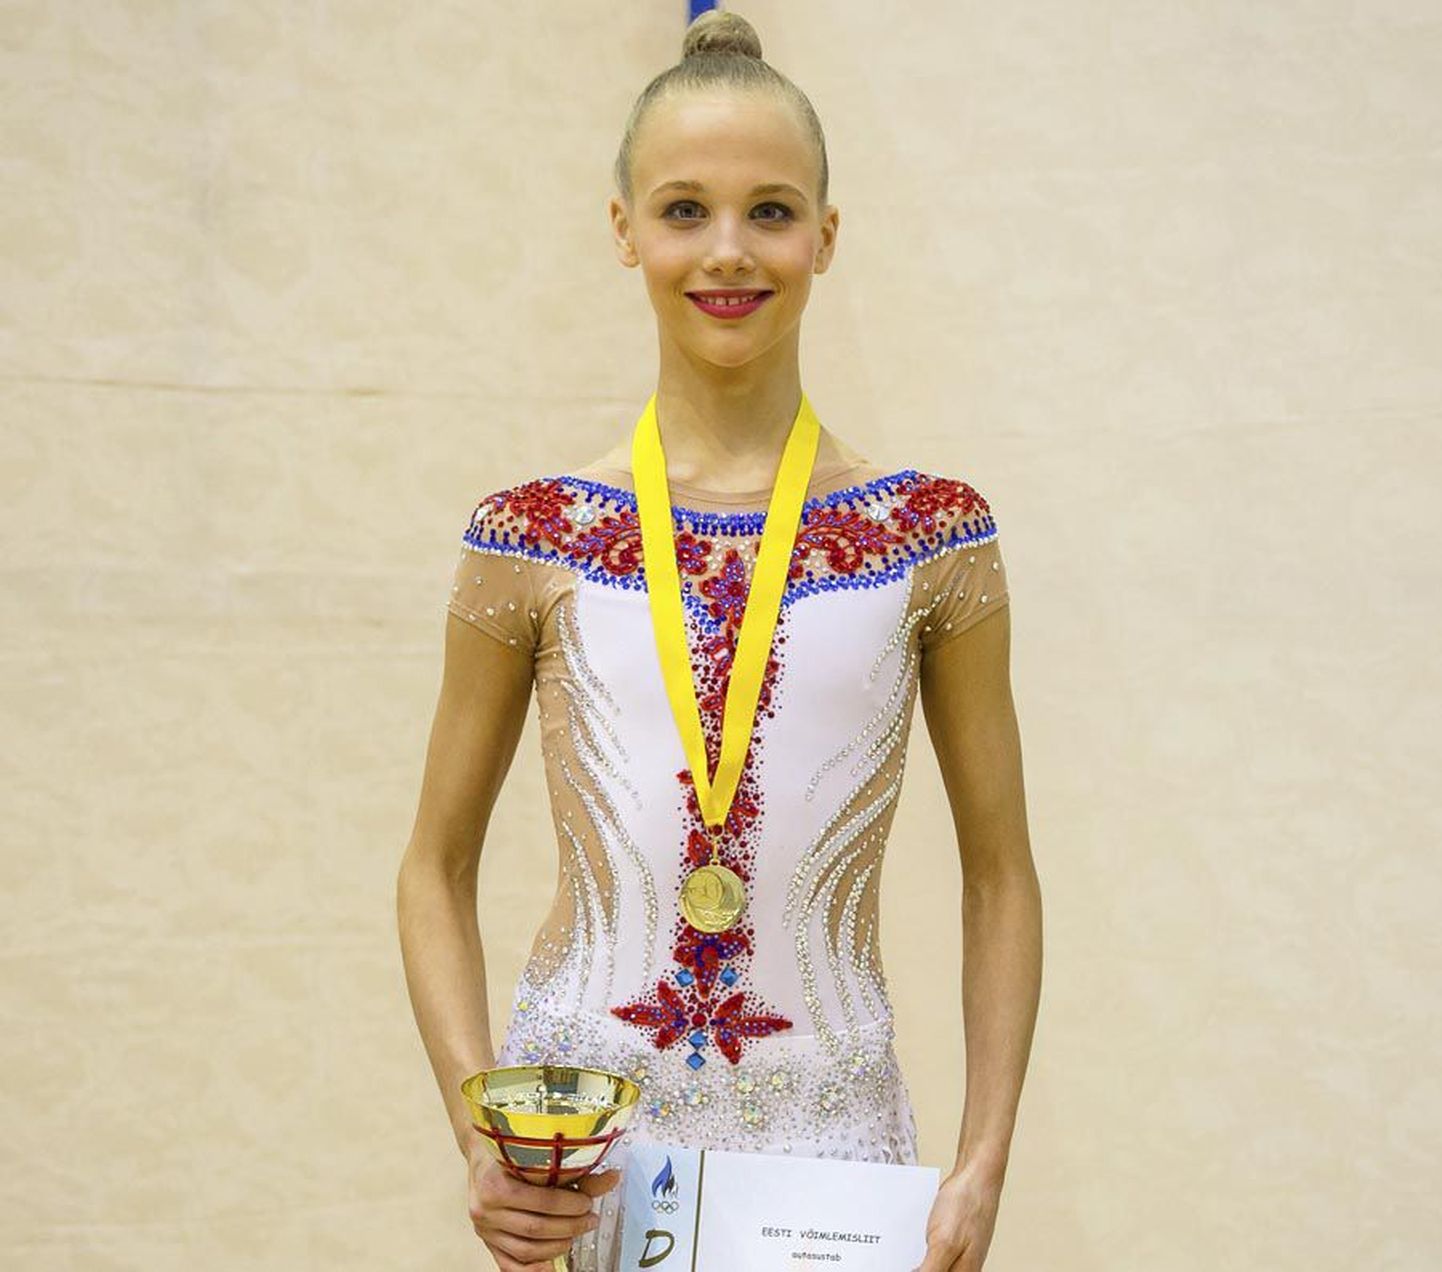 Johanna Christina Peterson sai Narvas asetleidnud Eesti iluvõimlemise karikavõistlustel juunioride klassis esikoha ning valmistub nüüd kahe nädala pärast peetavateks Eesti meistrivõistlusteks.